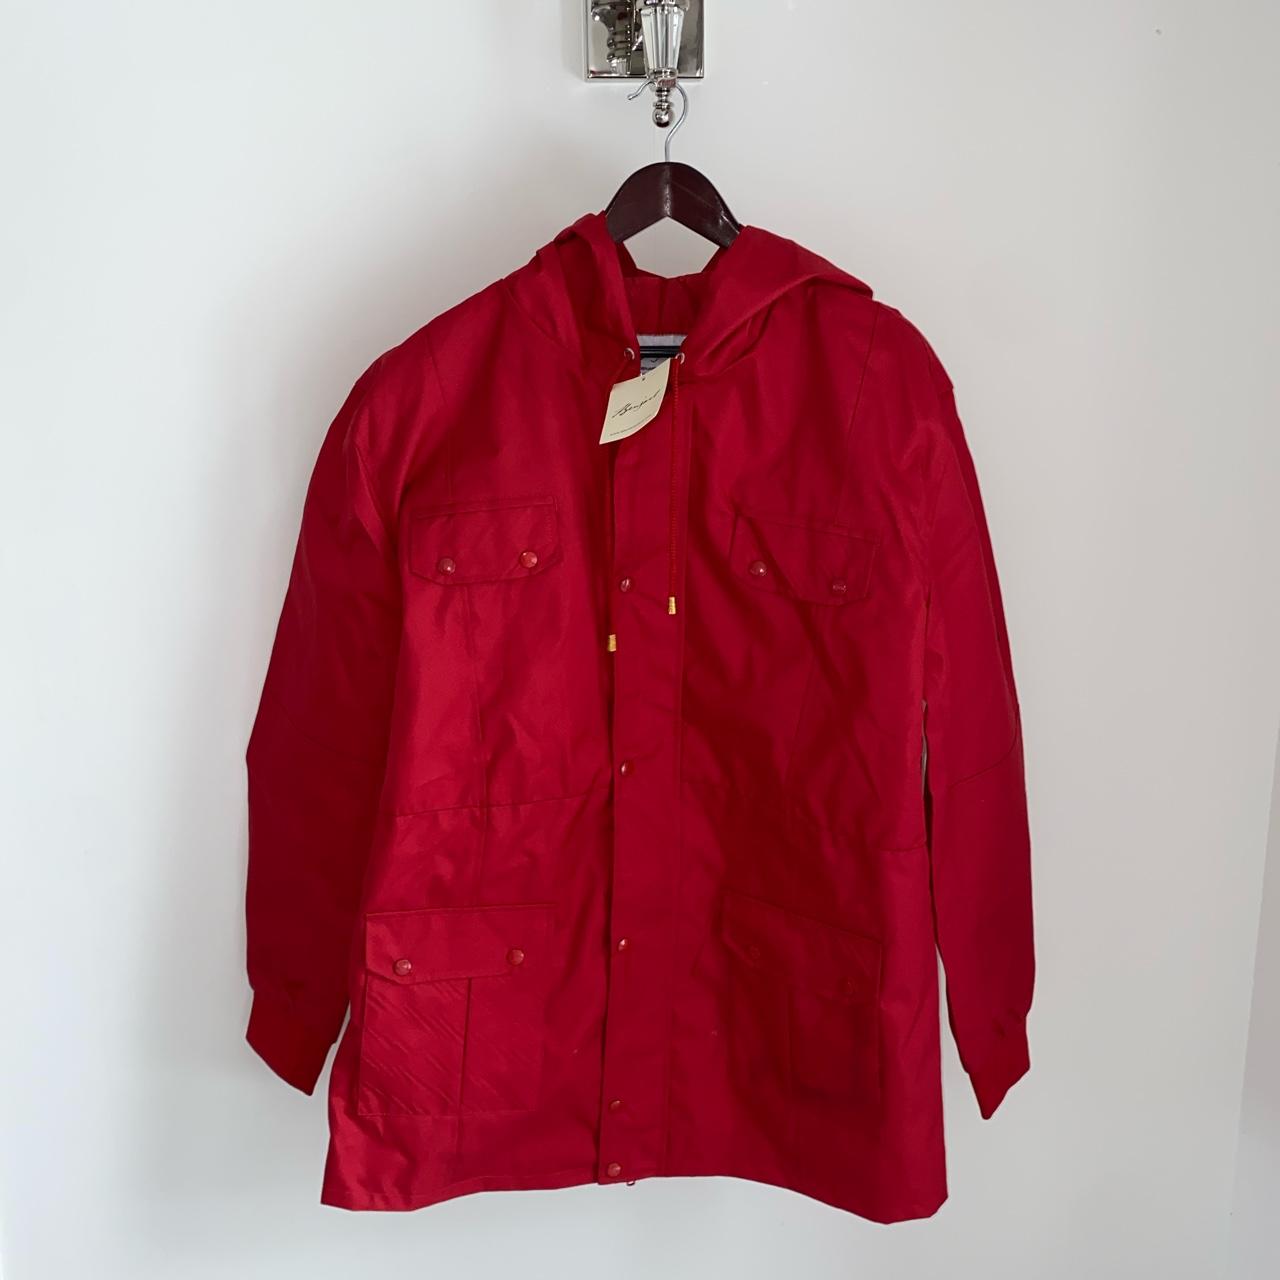 Benjart blood red weatherman coat brand new with... - Depop